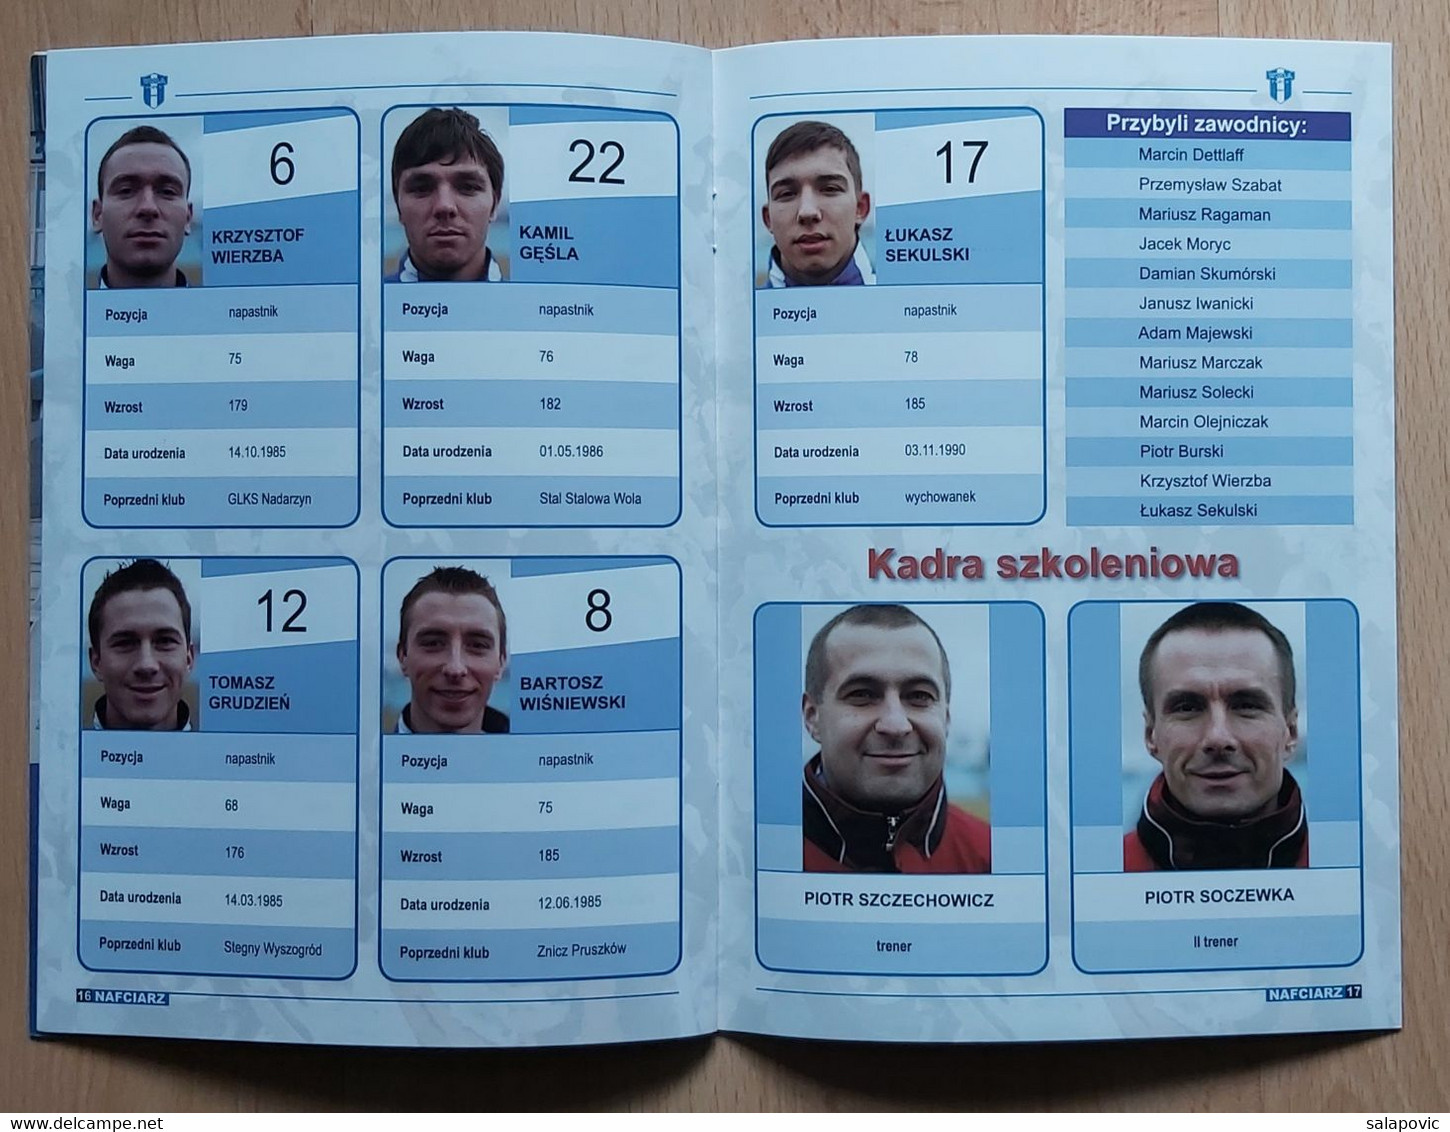 Nafciarz (oficjalna Gazeta Wisły Płock) Nr 51 - The Official Newspaper Of Wisła Płock Wiosna 2009 Football Match Program - Bücher